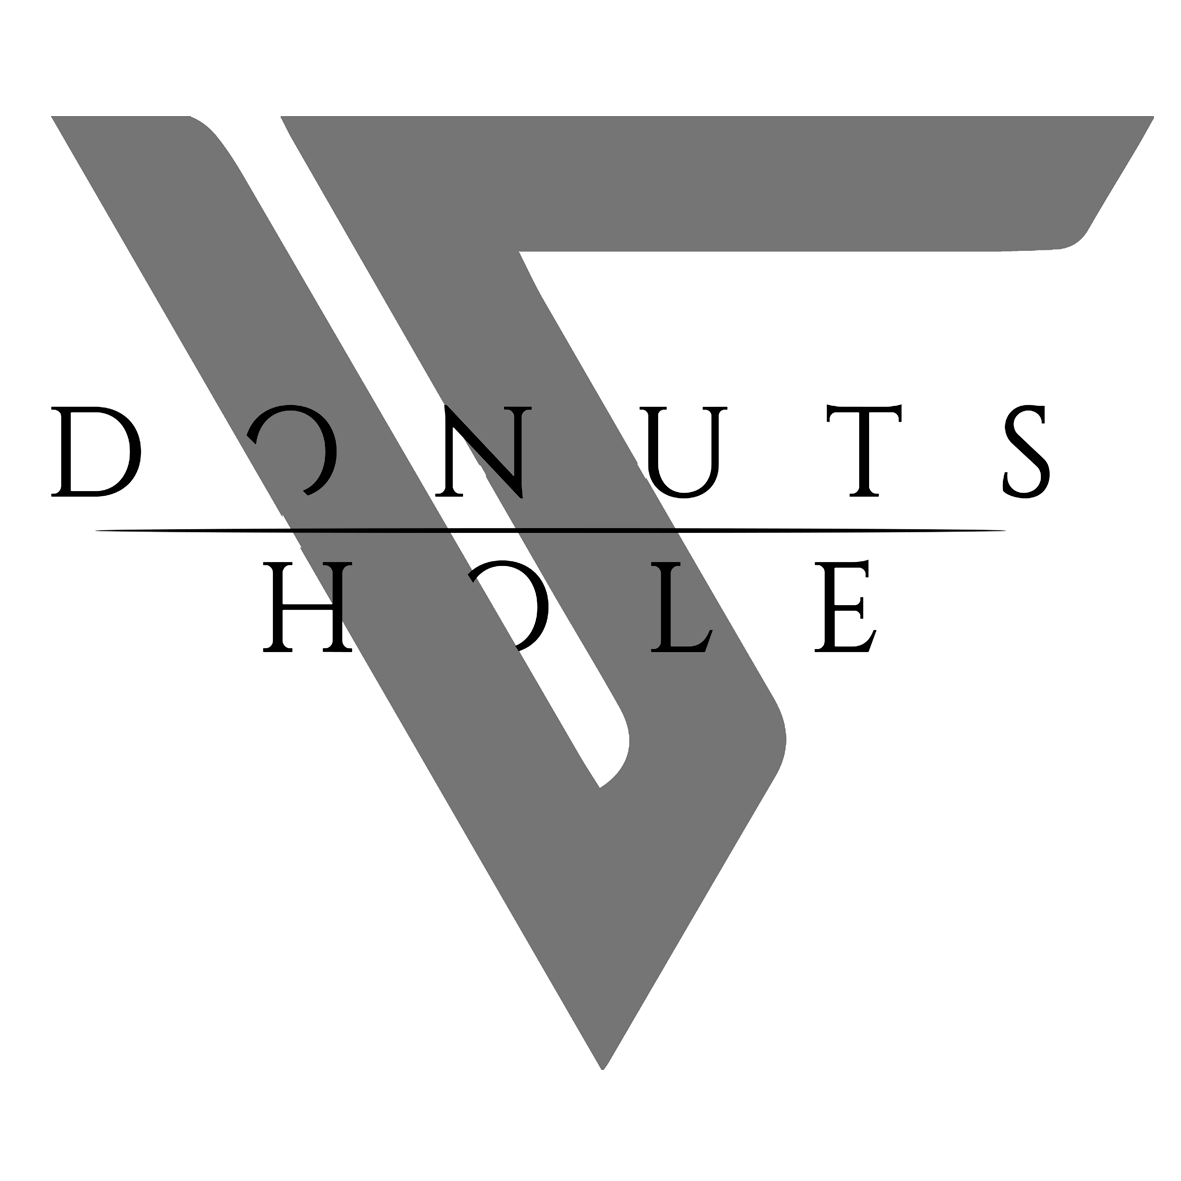 Donuts hole – Nuevo vídeo + REGALO para sus fans